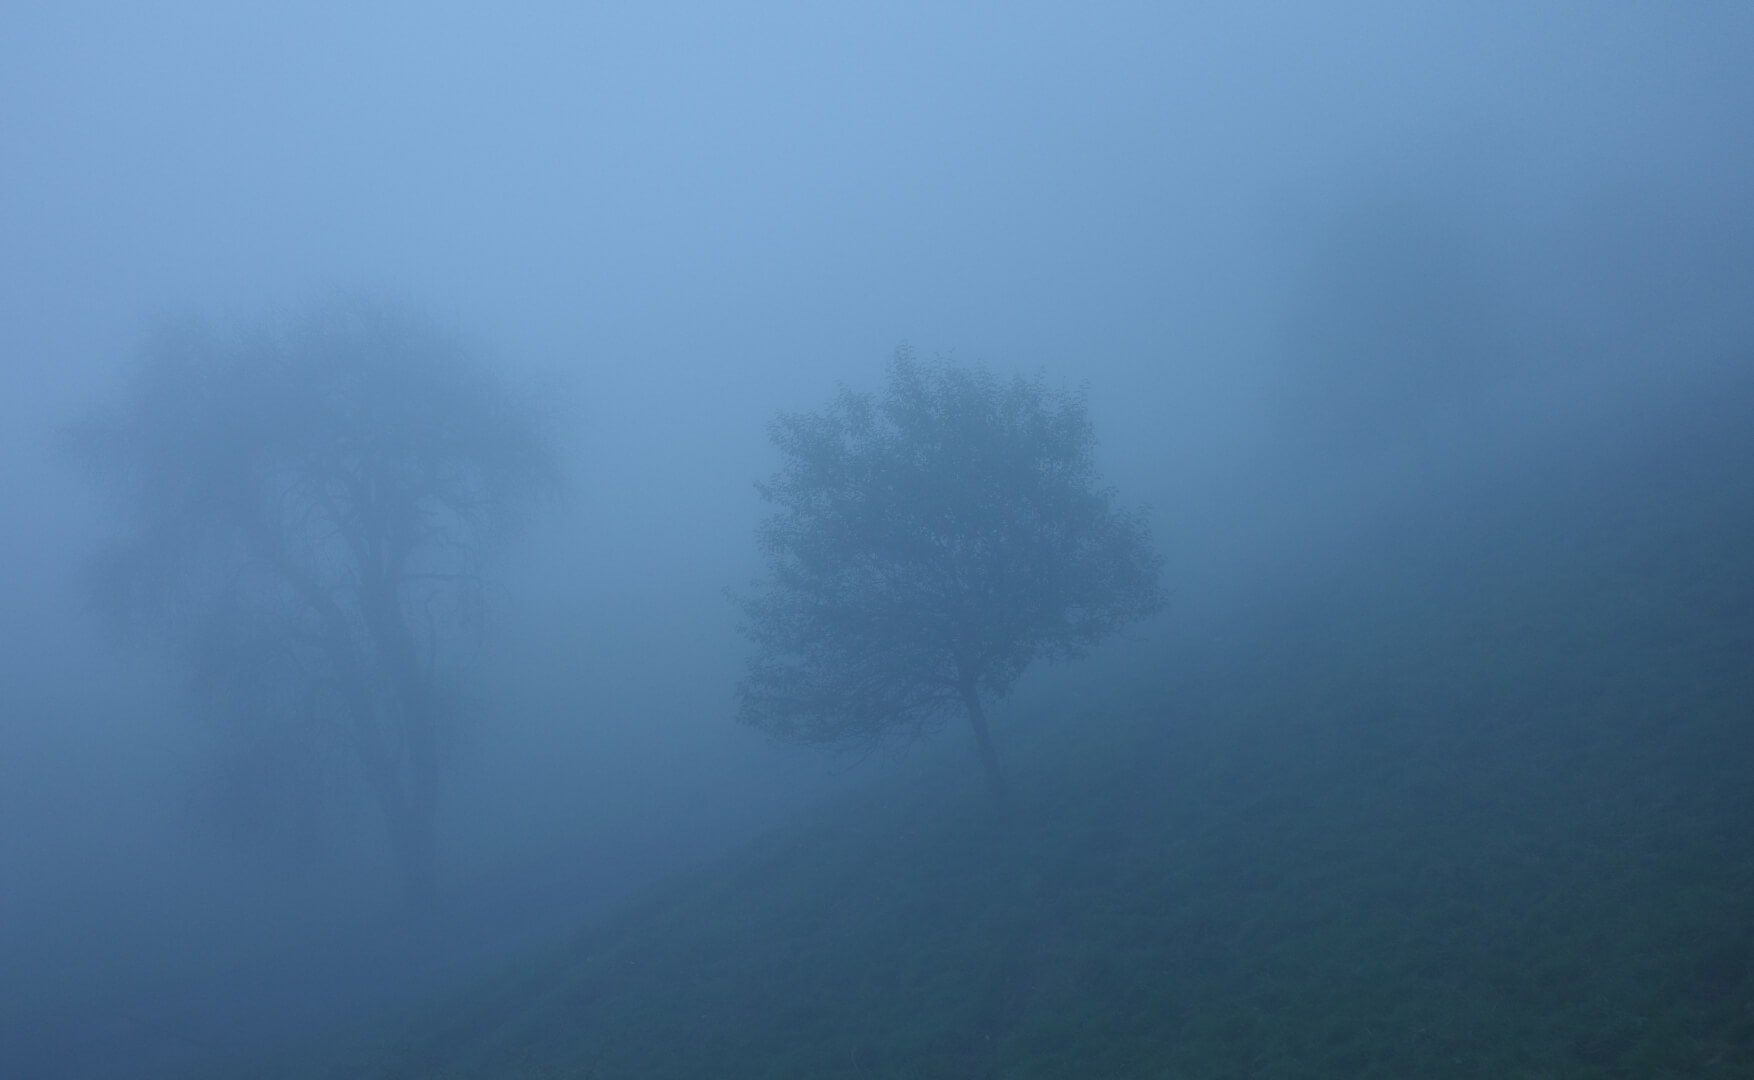 Baum im dichten Nebel